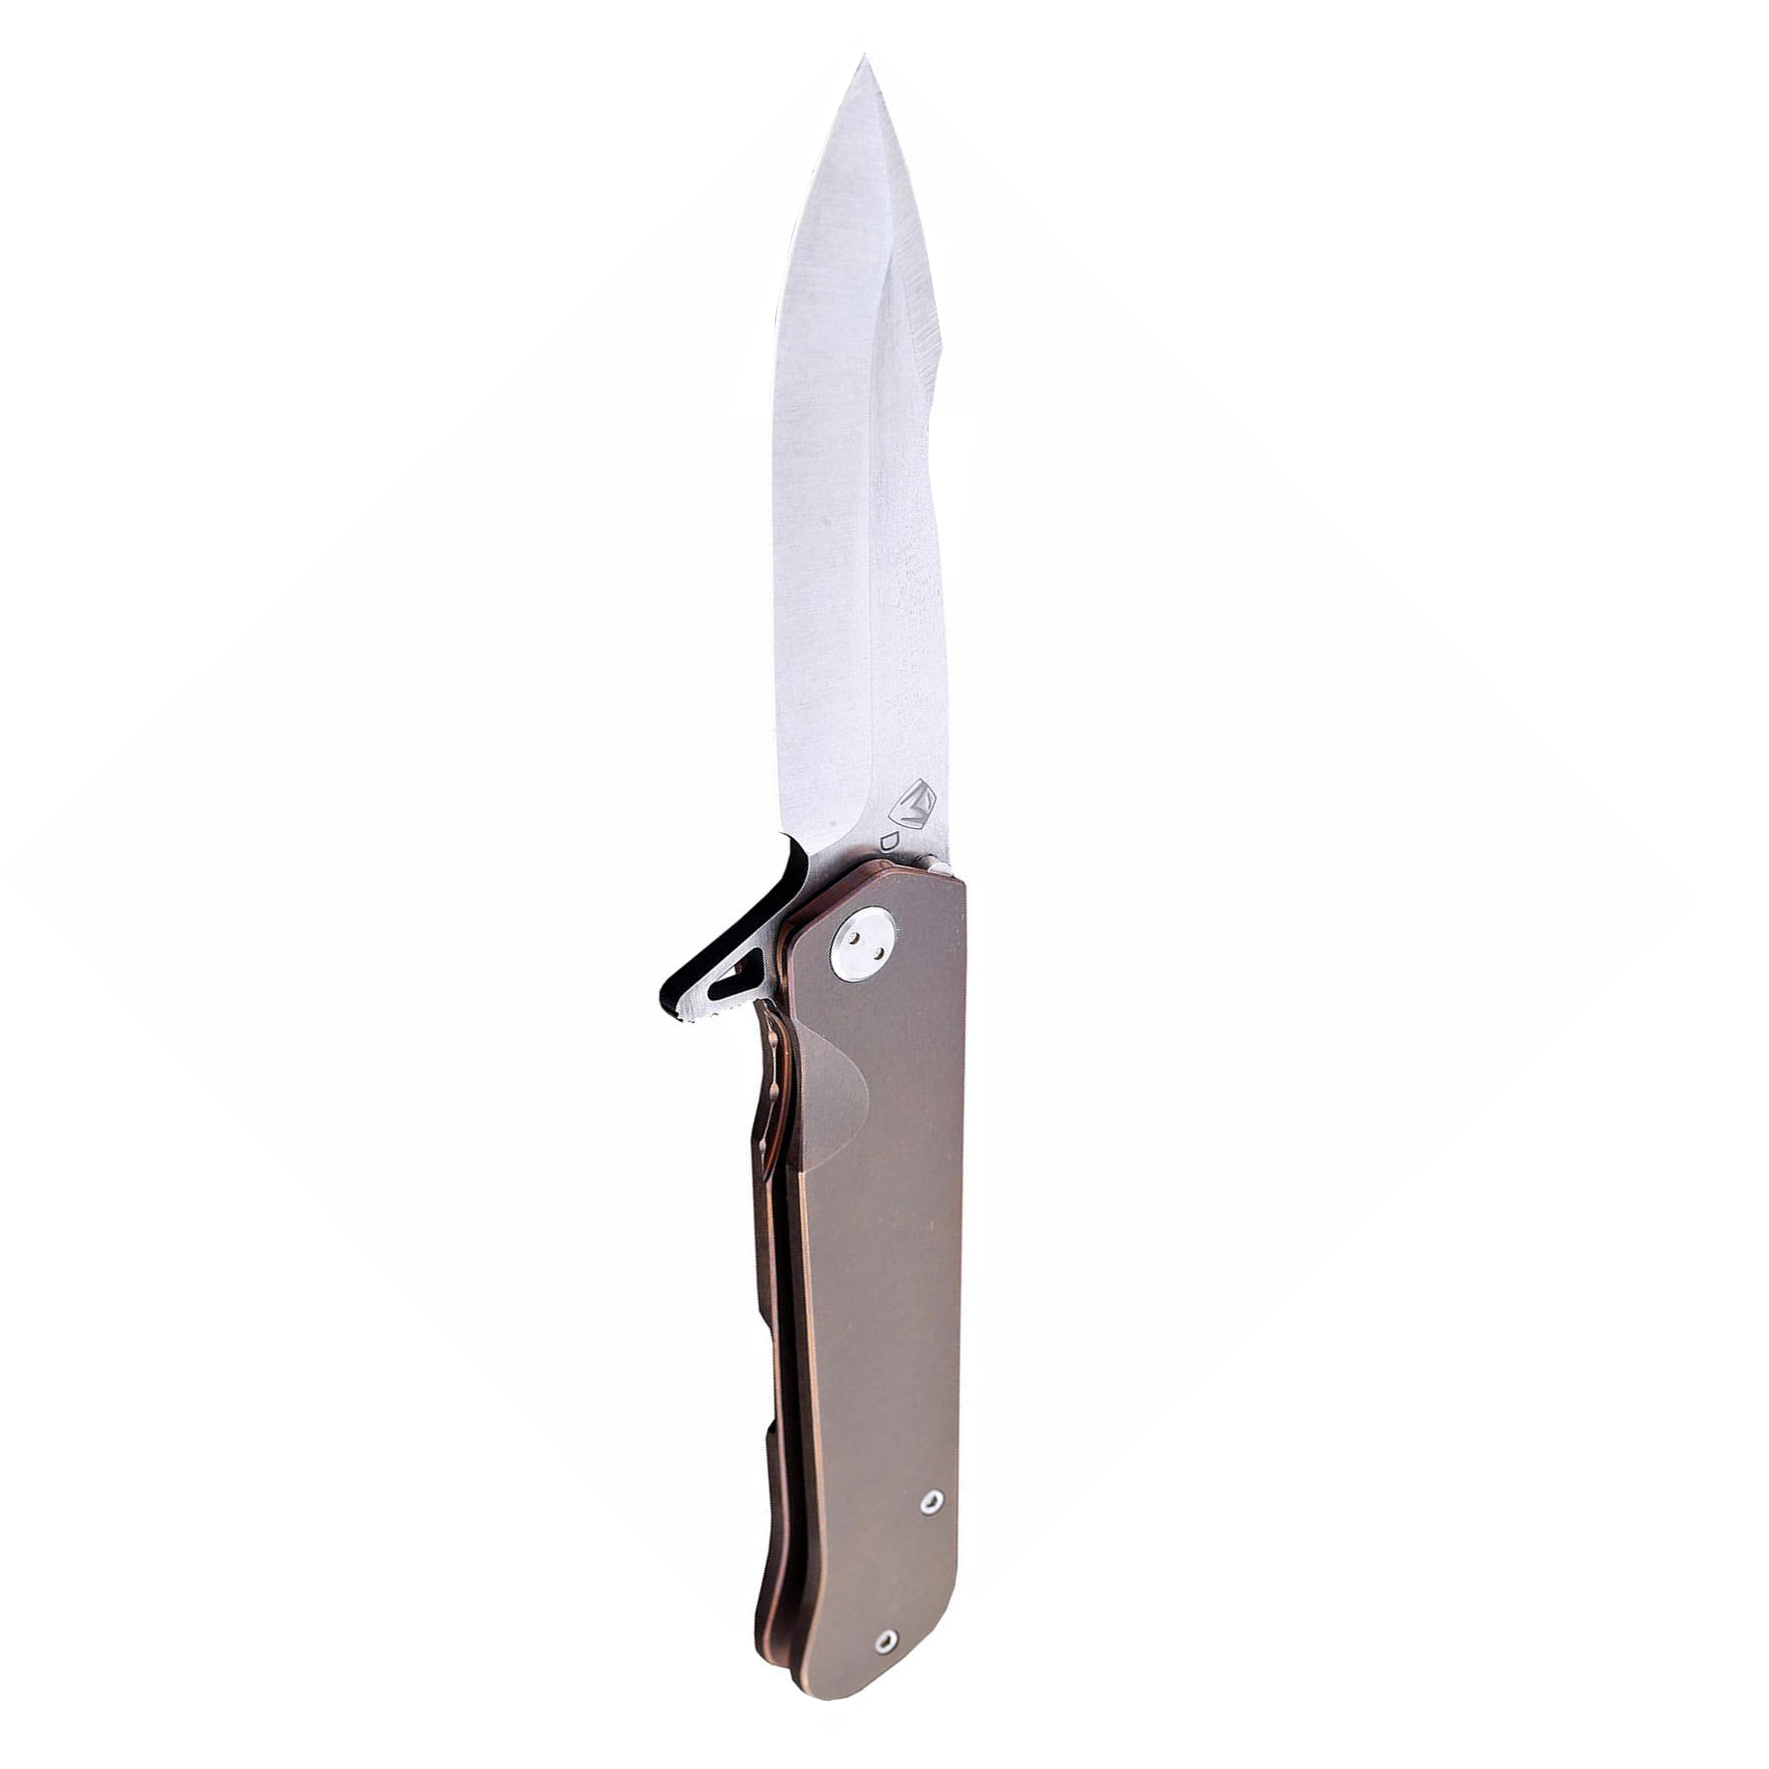 фото Нож складной medford gigantes flipper, сталь d2 tool steel, рукоять титановый сплав, коричневый